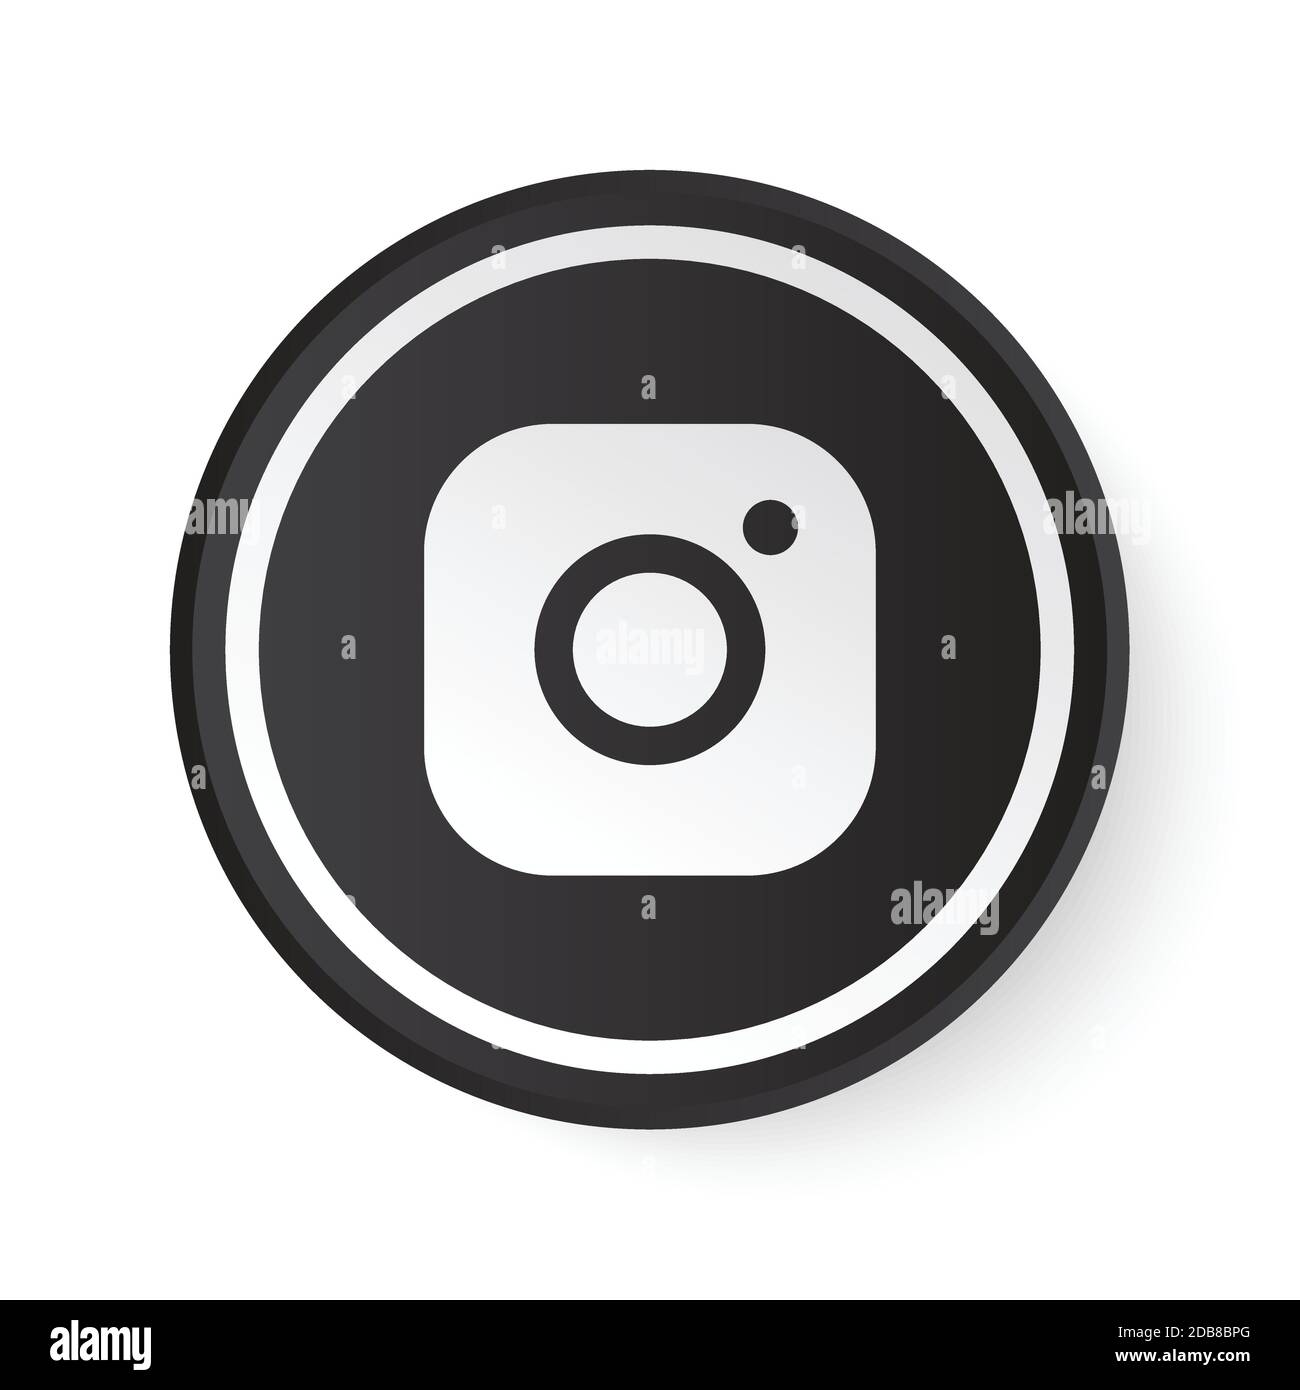 Pulsante nero cerchio Instagram con logo bianco. Icona dei social media con design moderno per sfondo bianco. Modello rotondo 3D con una bella forma Illustrazione Vettoriale